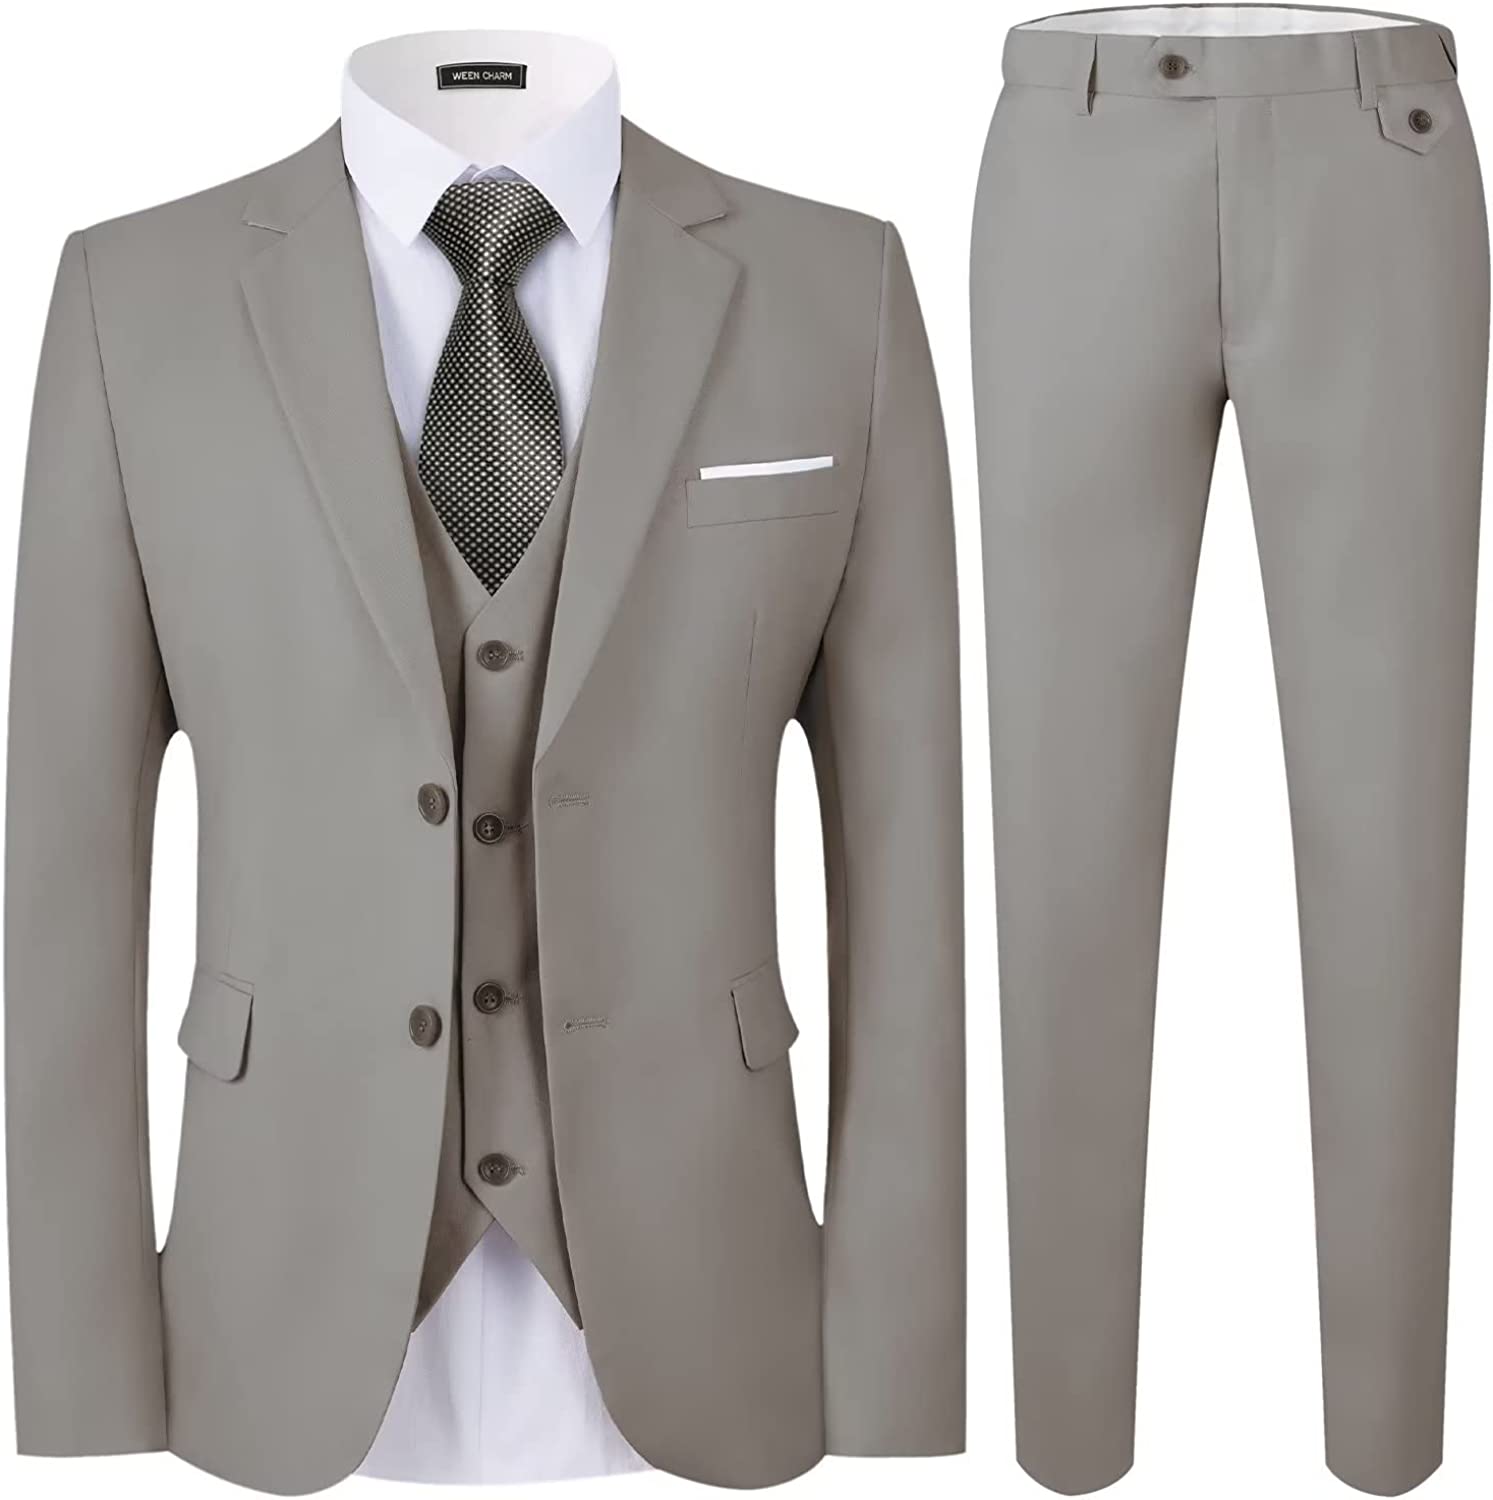 WEEN CHARM Men's Suits Slim Fit,3 Piece Suit for Men,2 Button Blazer Jacket  Vest